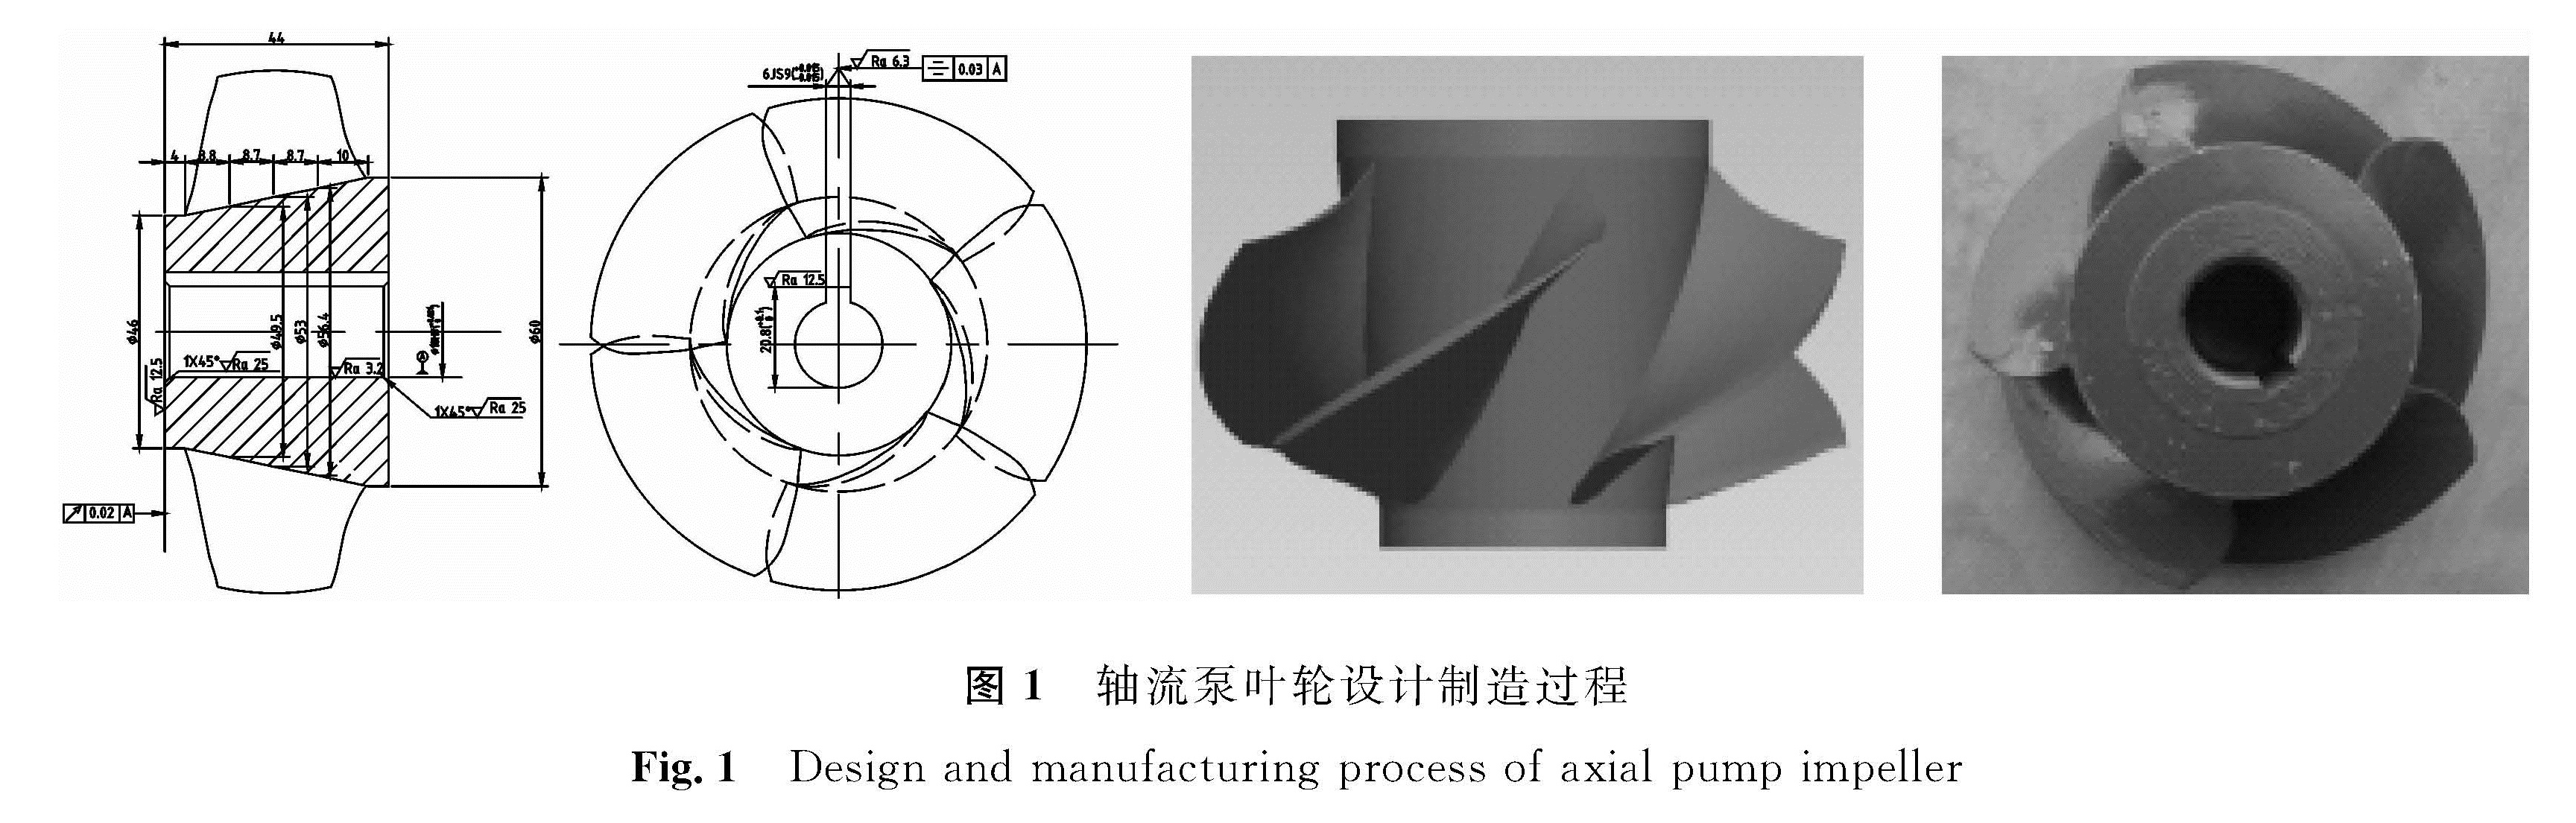 图1 轴流泵叶轮设计制造过程<br/>Fig.1 Design and manufacturing process of axial pump impeller